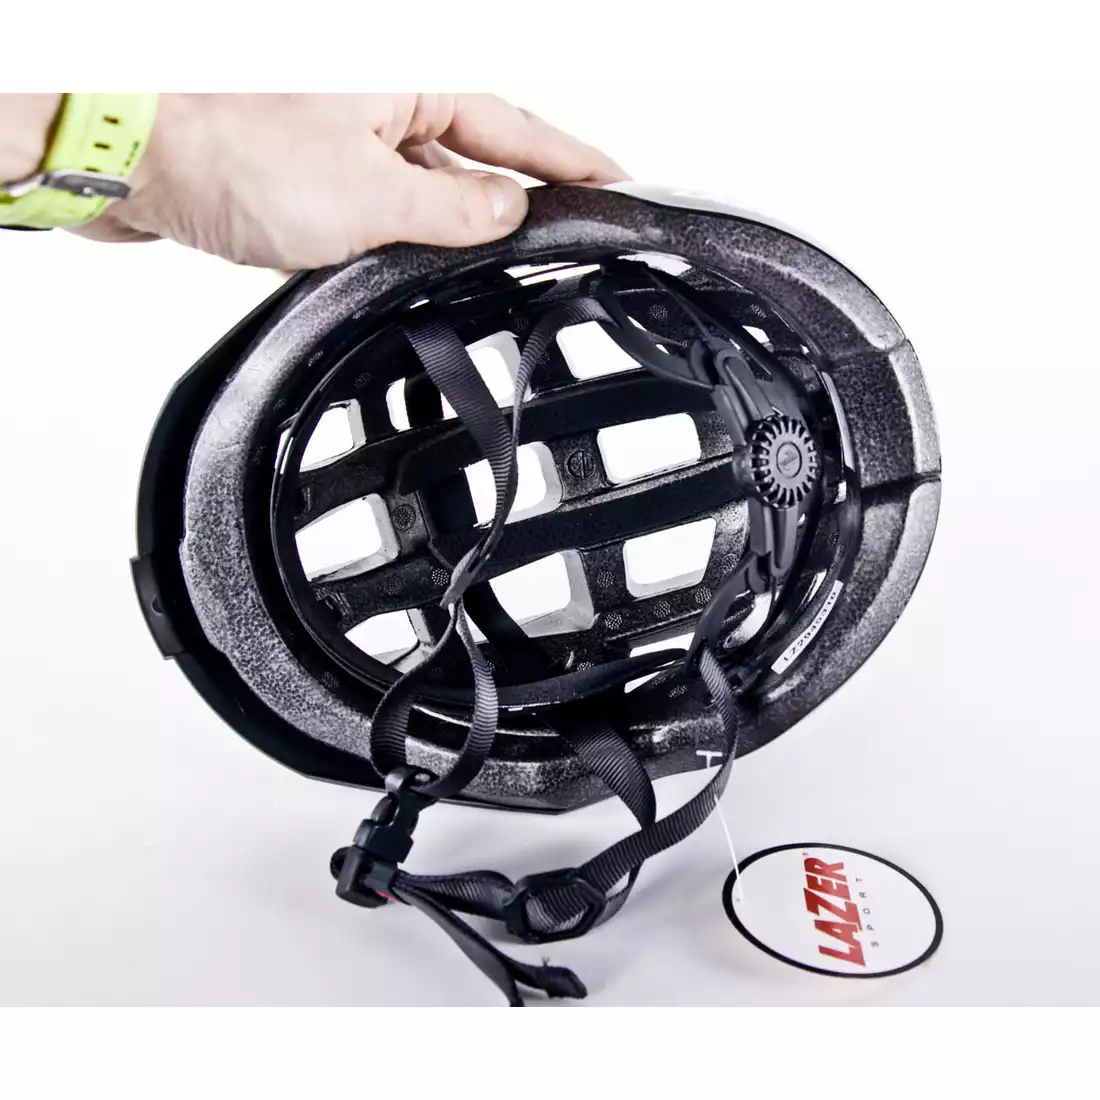 LAZER Compact kask rowerowy czarny połysk